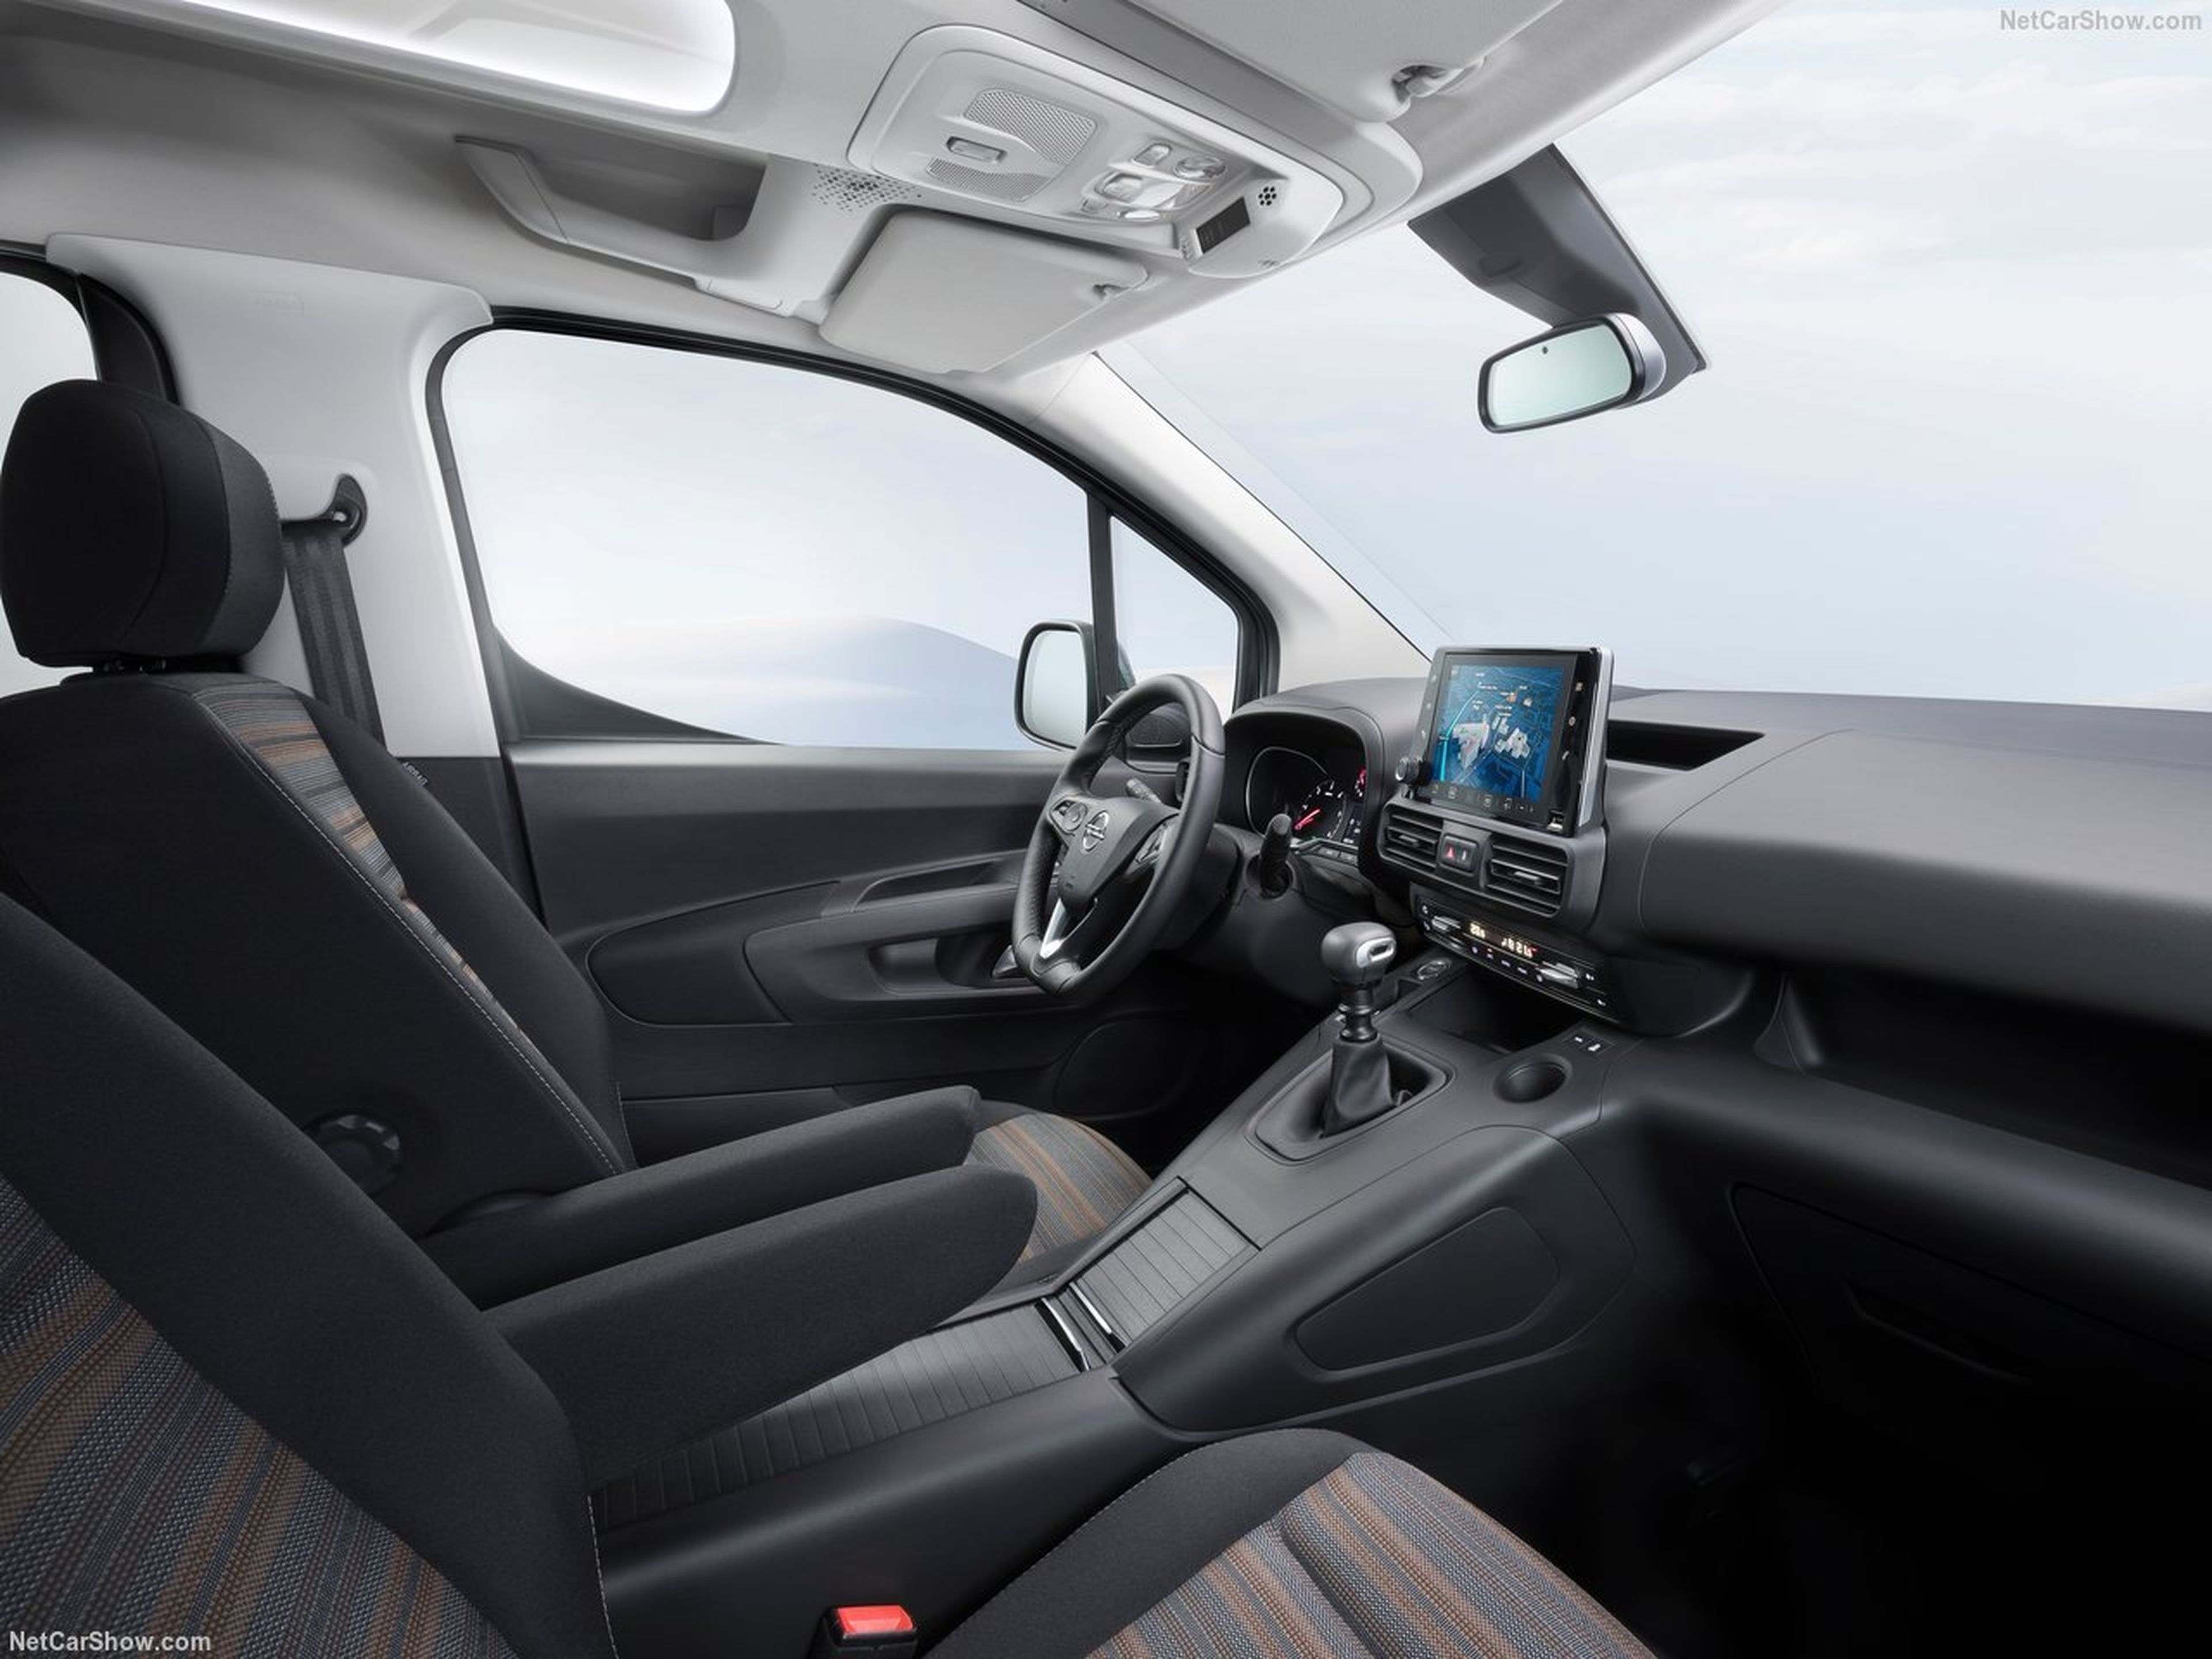 Opel Combo e-life